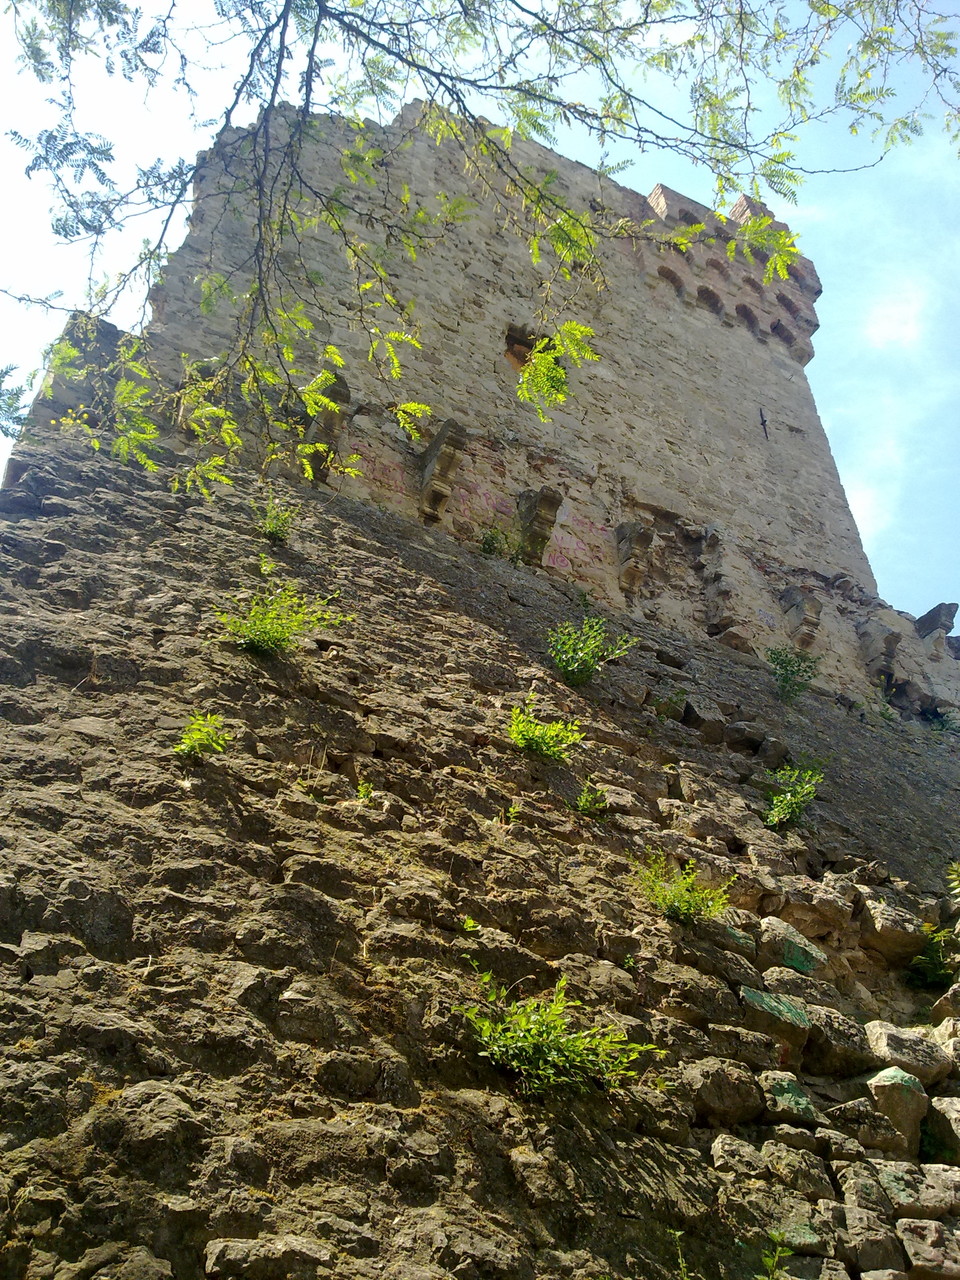 Генуэзская крепость в Феодосии